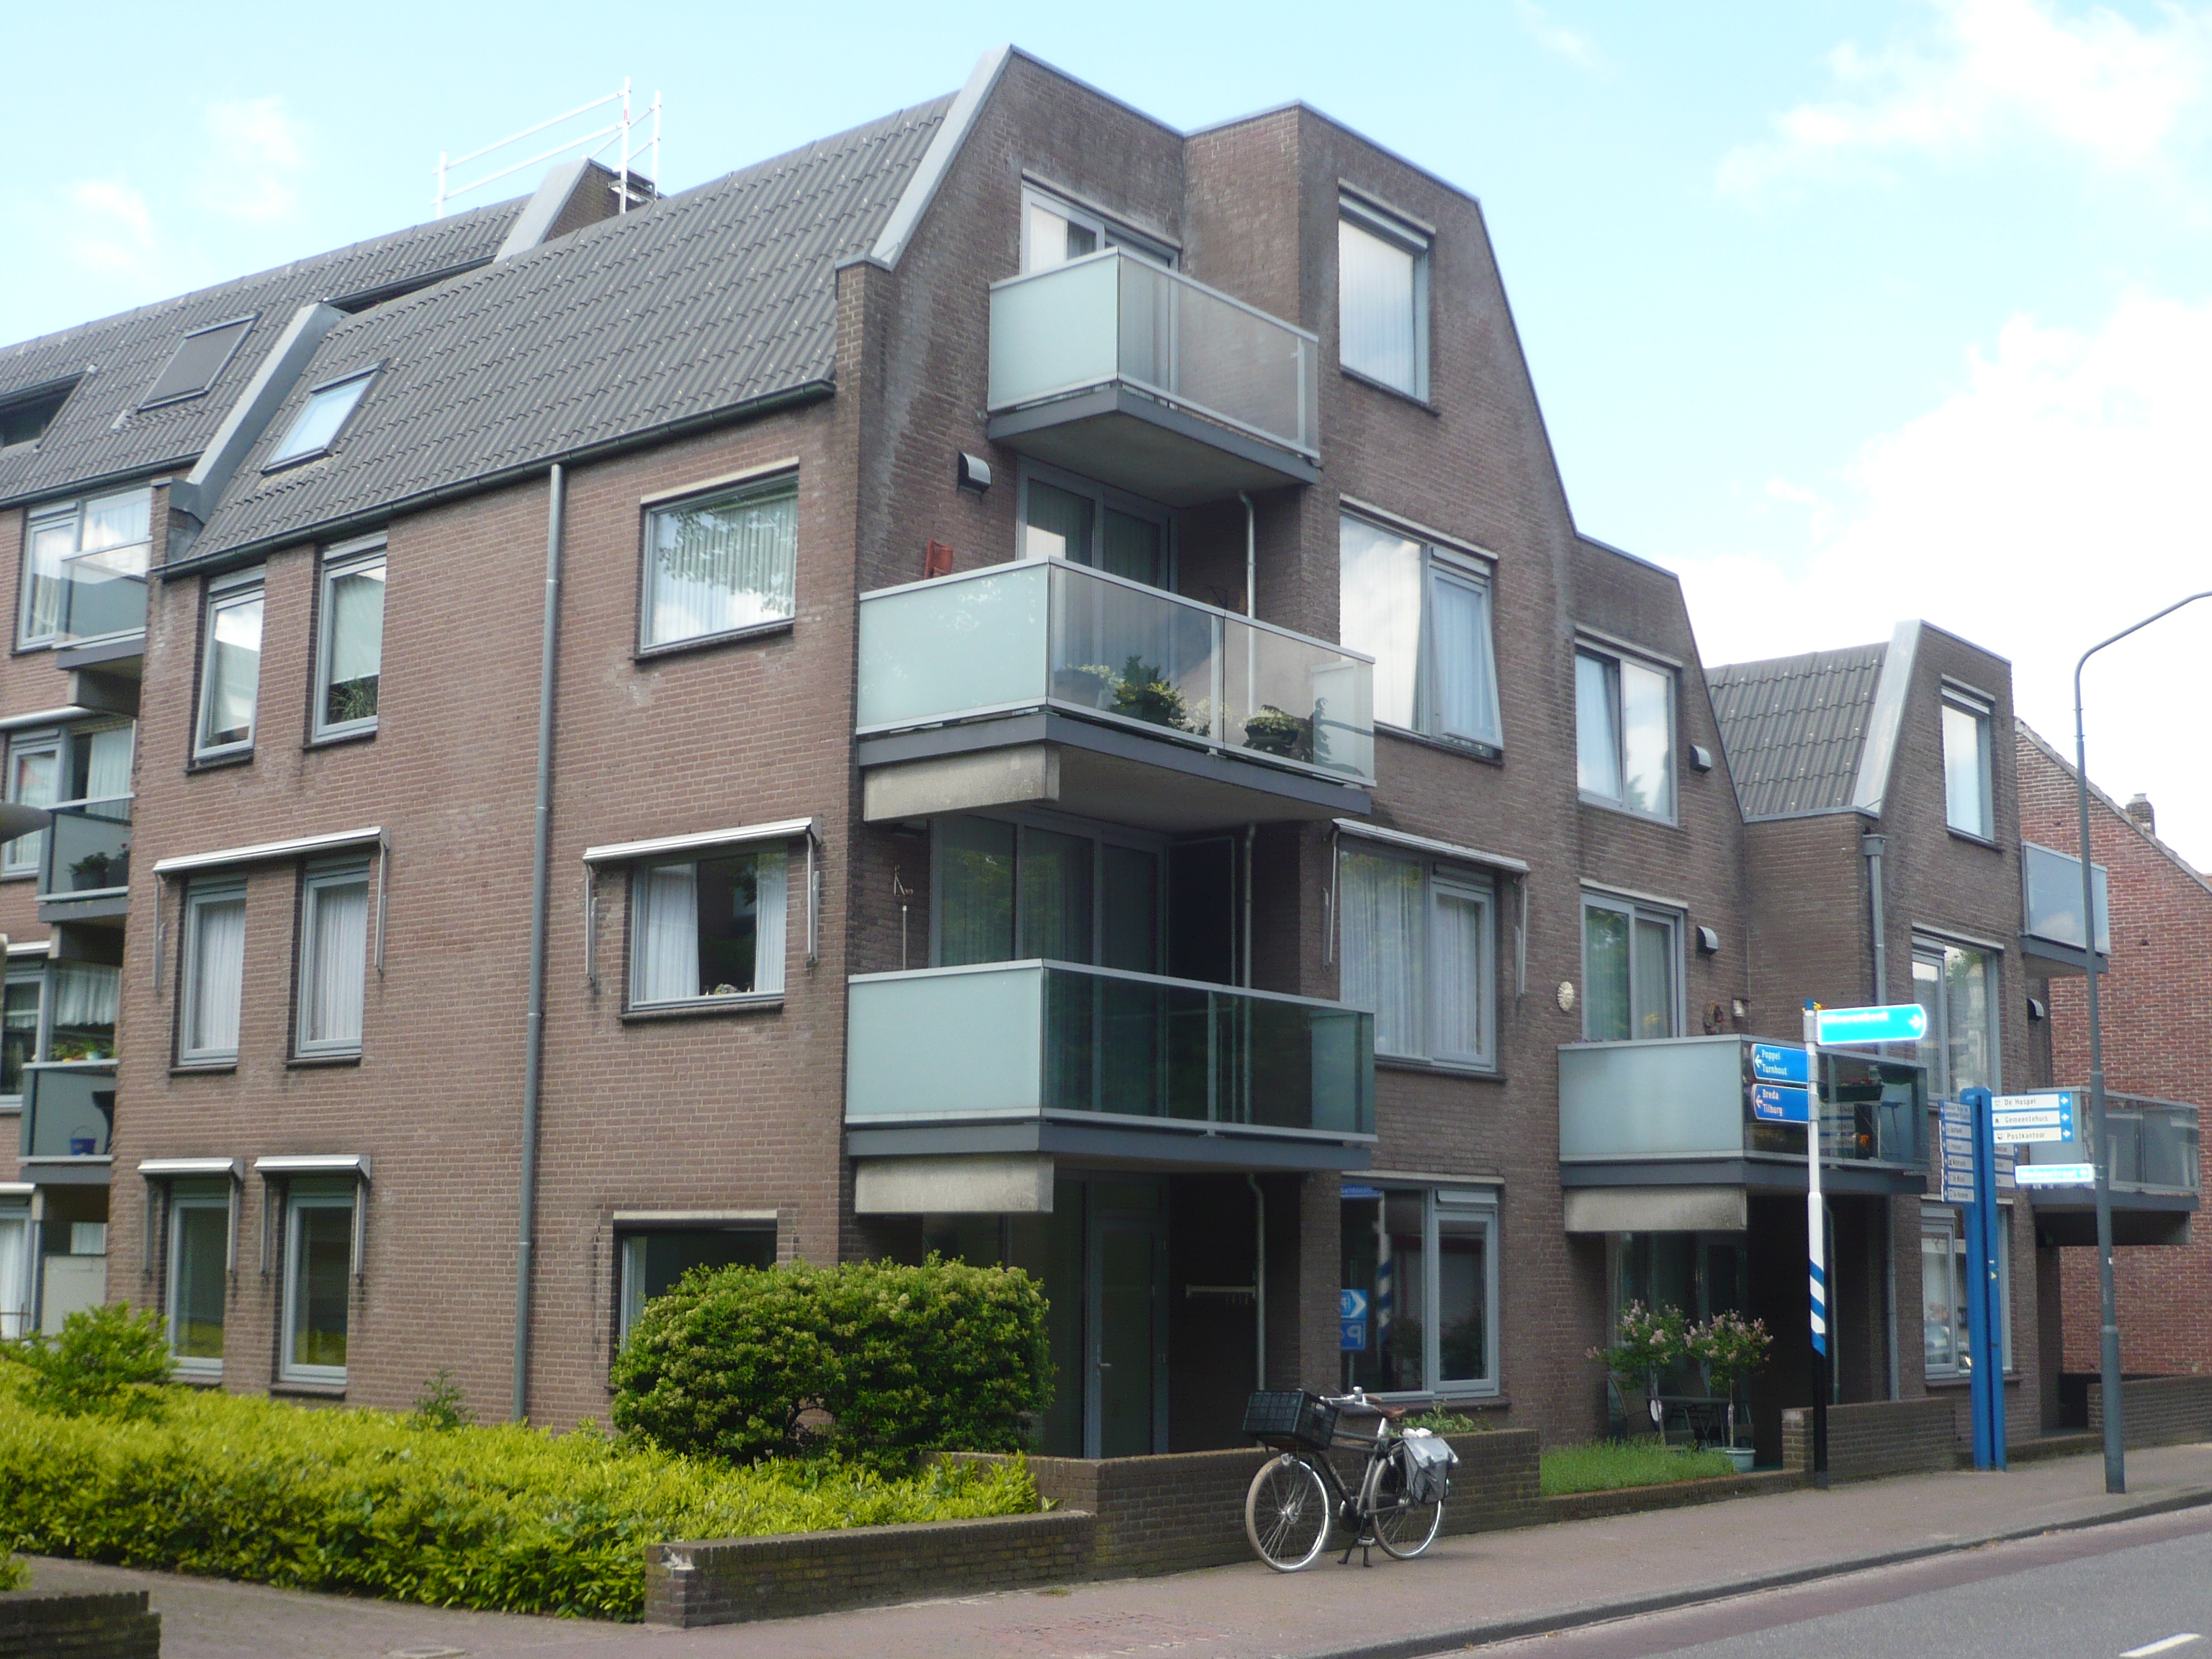 Nieuwstraat 60, 5051 NV Goirle, Nederland